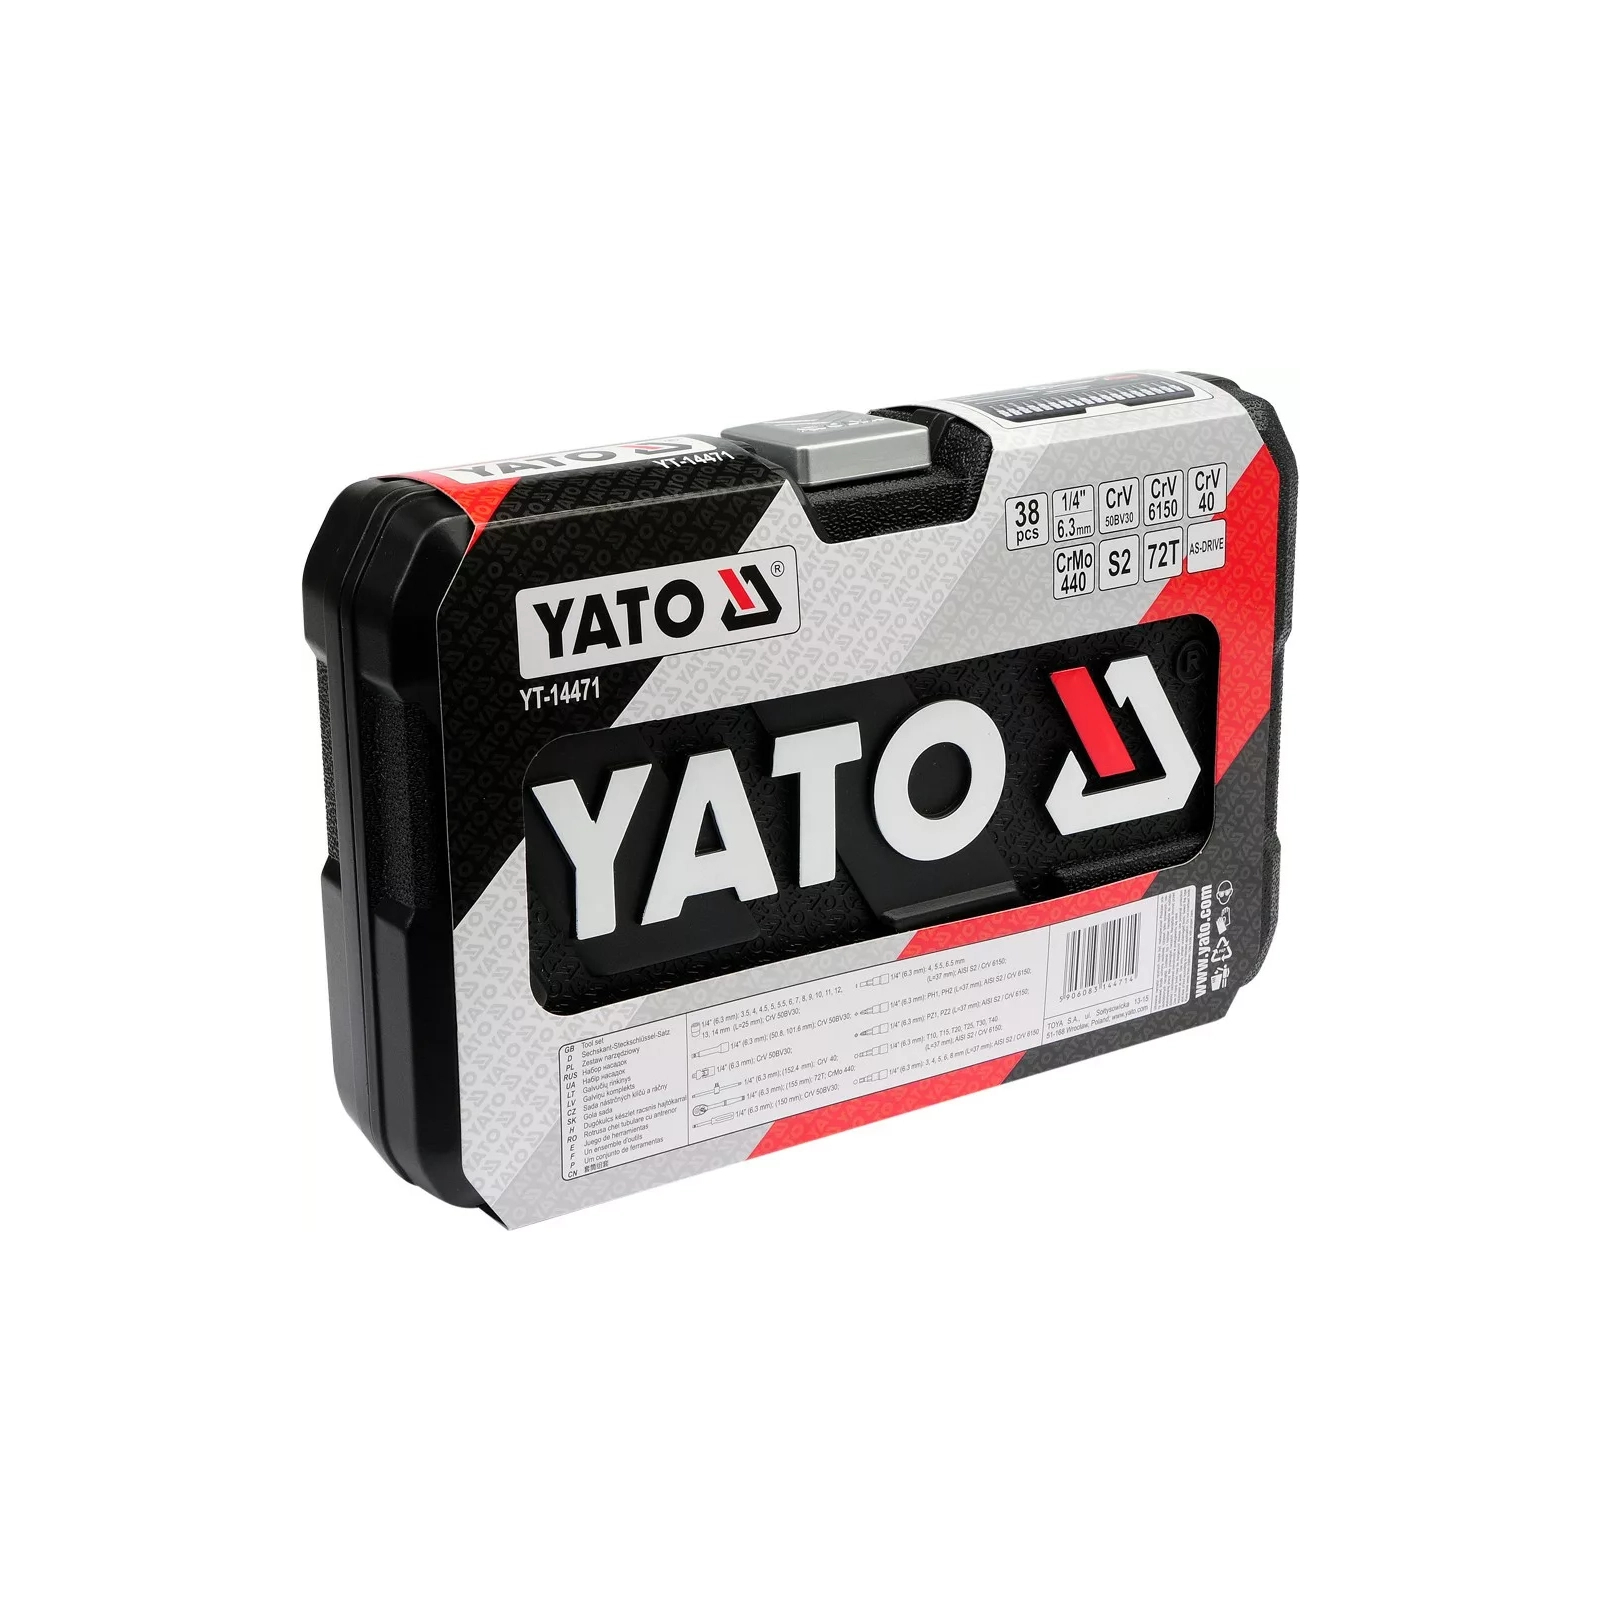 Набір інструментів Yato YT-14471 зображення 4